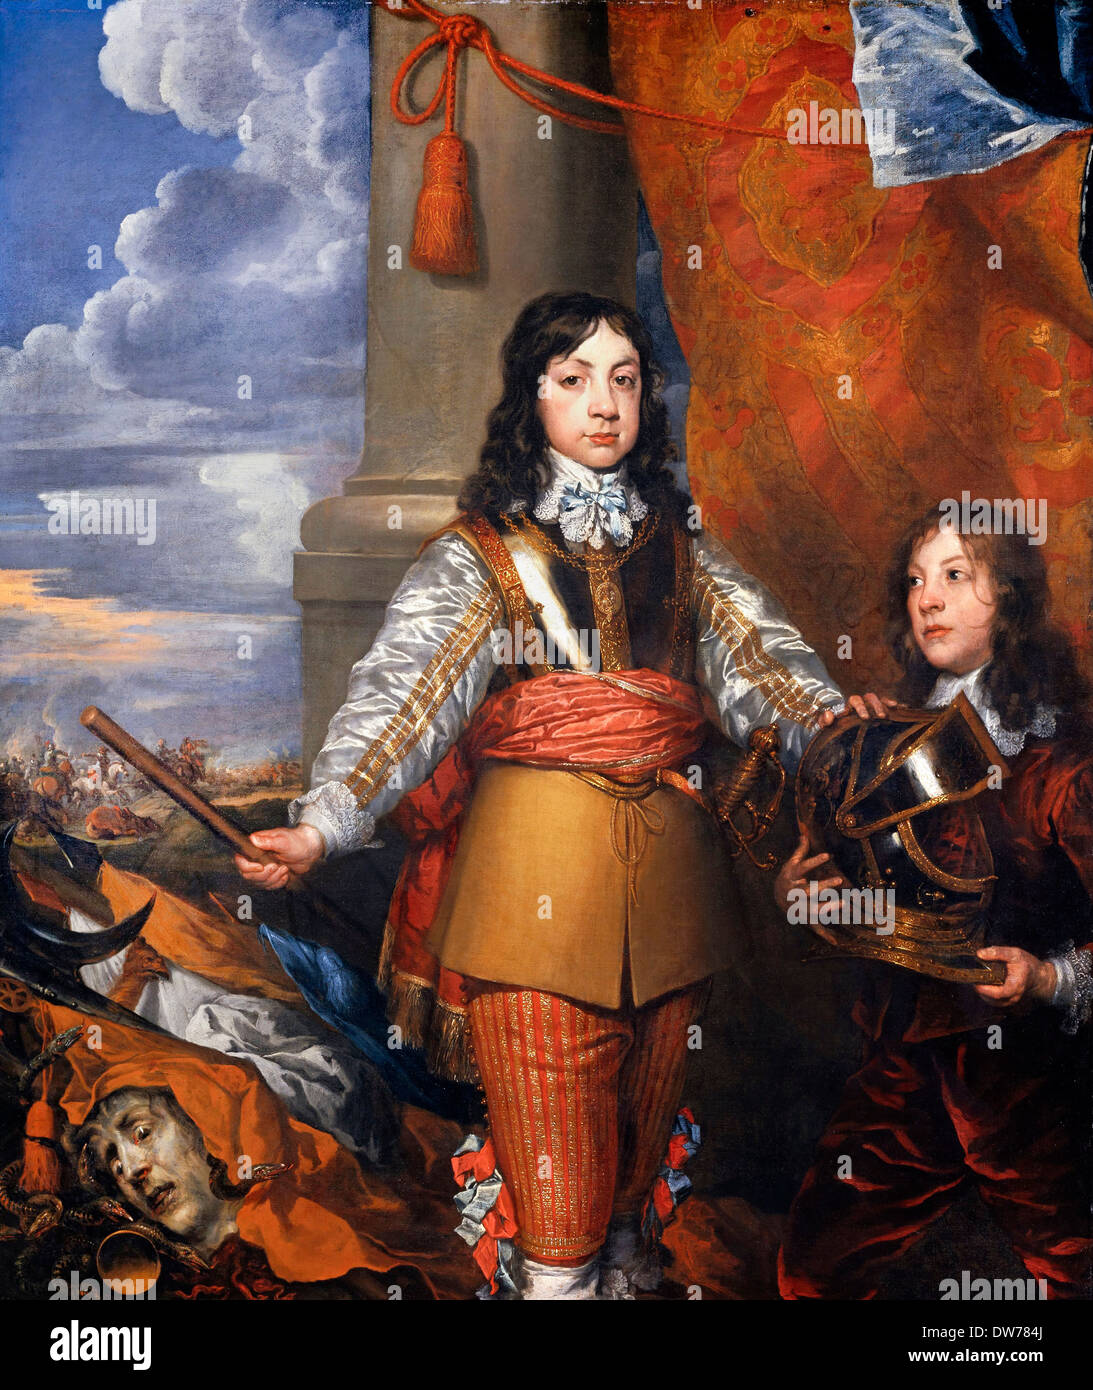 William Dobson, Charles II, 1630-1685. König der Schotten 1649-1685. König von England und Irland 1660-1685 1642 Öl auf Leinwand. Stockfoto